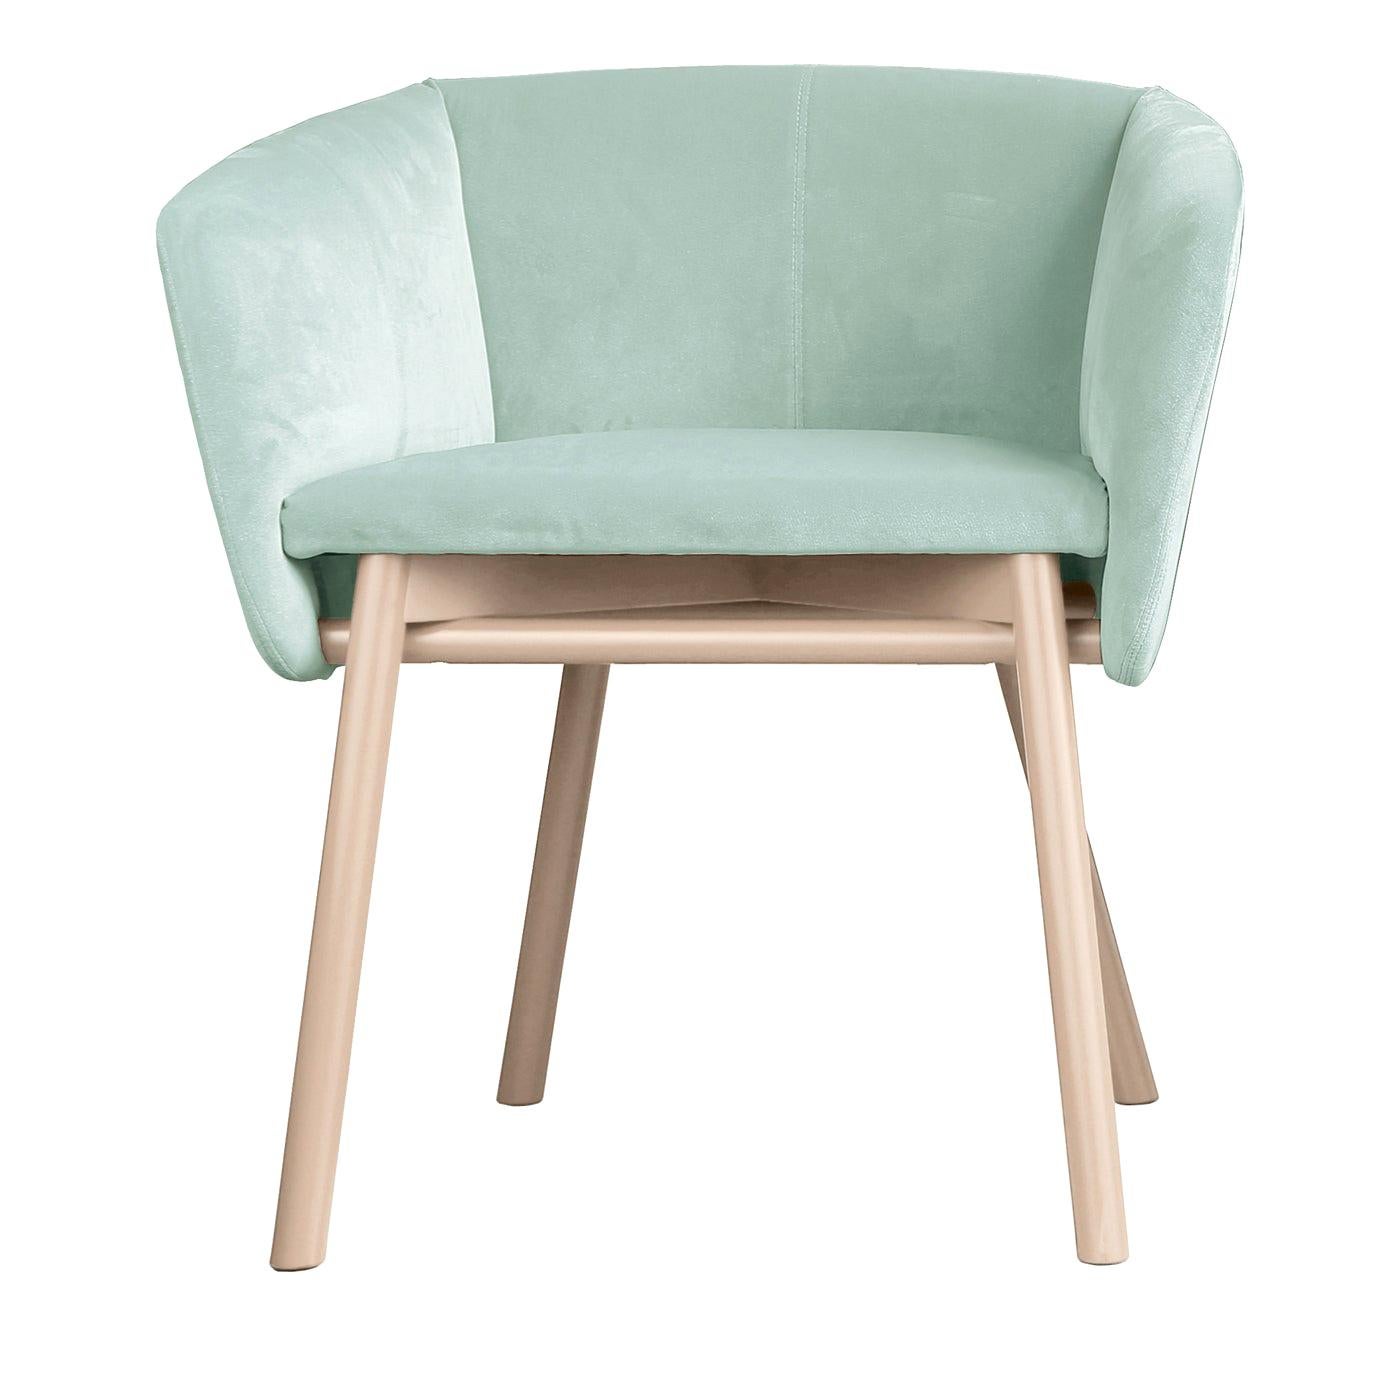 Balù Pale Green Chair by Emilio Nanni For Sale